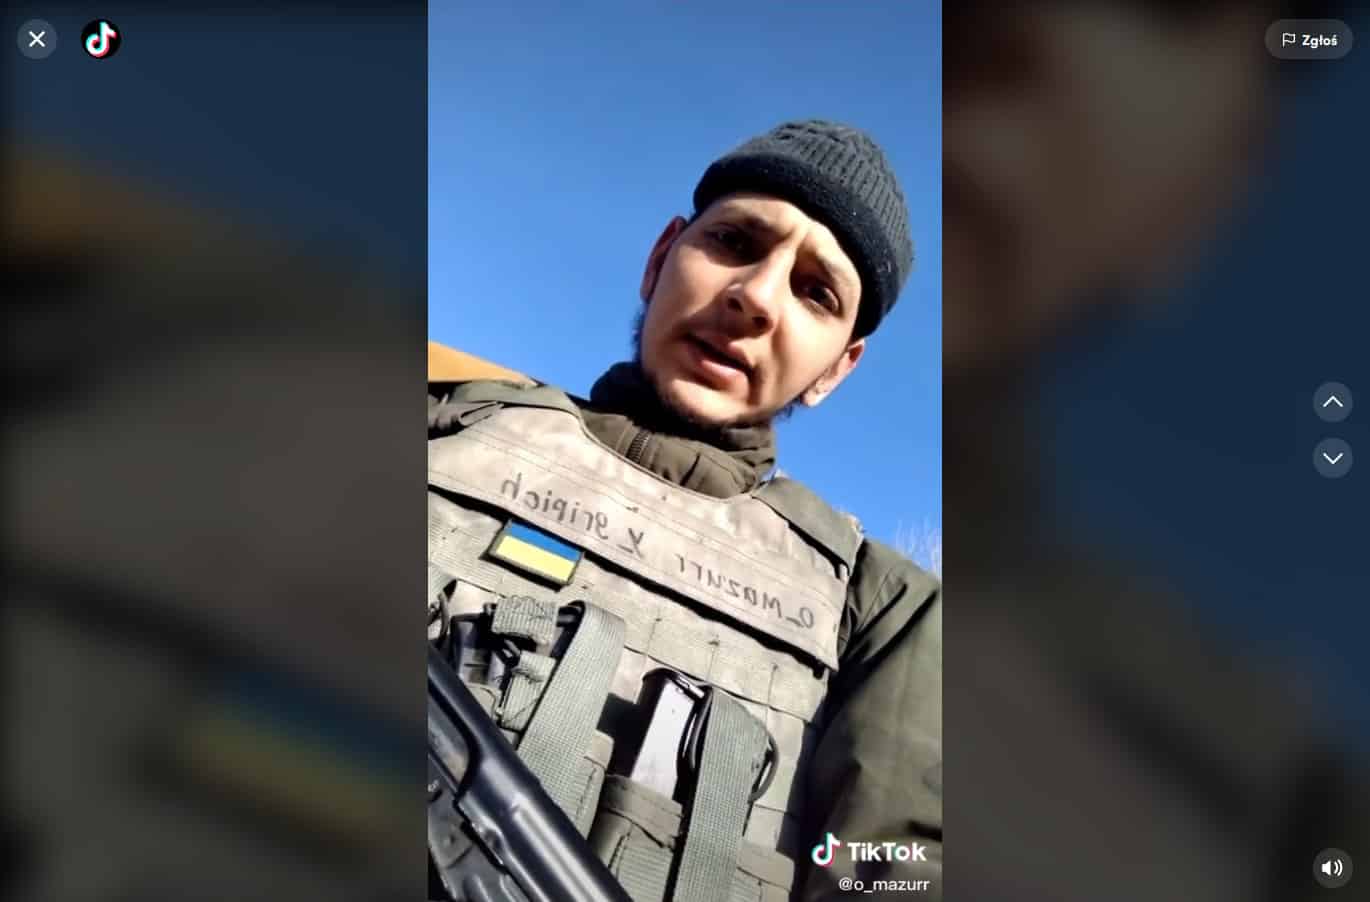 Ukraiński żołnierz z apelem do Kaczyńskiego: "Panie Jareczku kochany" ukraina TOP, Olsztyn, Wiadomości